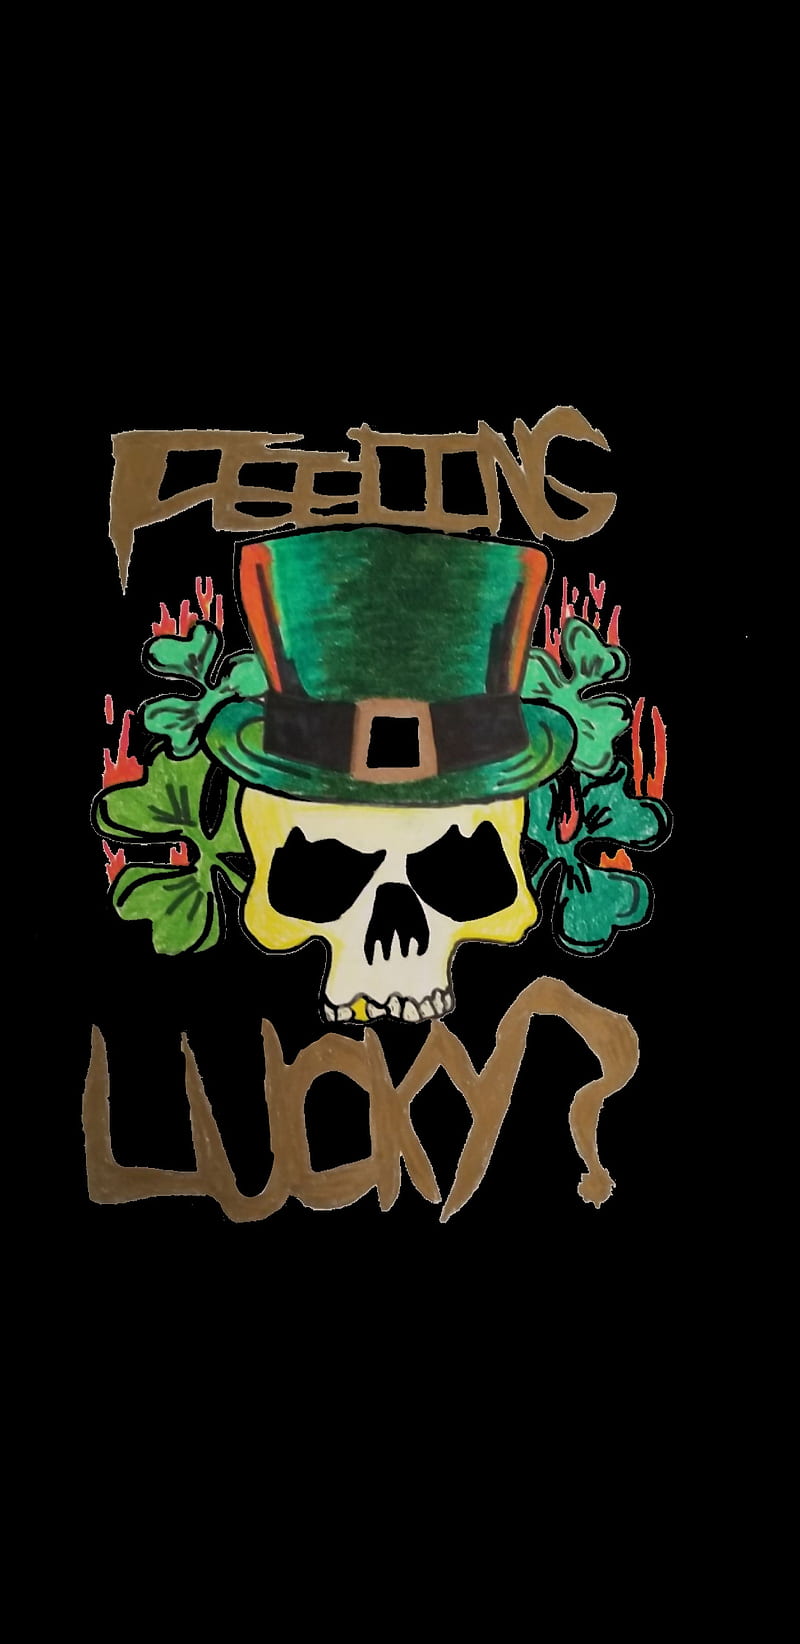 Feeling lucky , badass, green, leprechaun, luck, skull, HD phone wallpaper